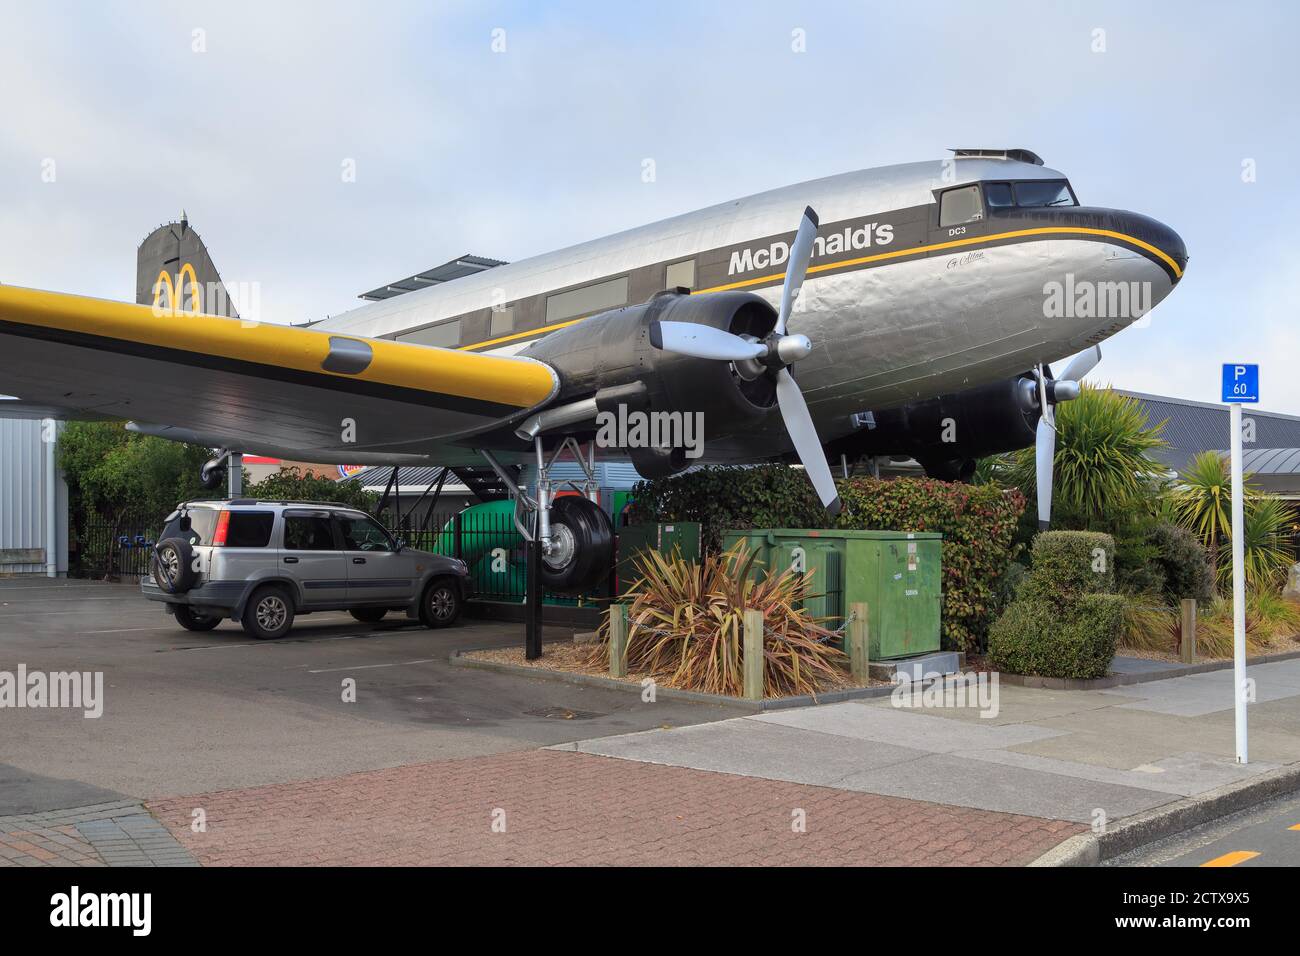 L'avion de 'McDonald's' à Taupo, en Nouvelle-Zélande. Ce restaurant dispose d'un Douglas DC-3 à l'extérieur, où les clients peuvent manger à l'intérieur du fuselage. 5/23/2020 Banque D'Images